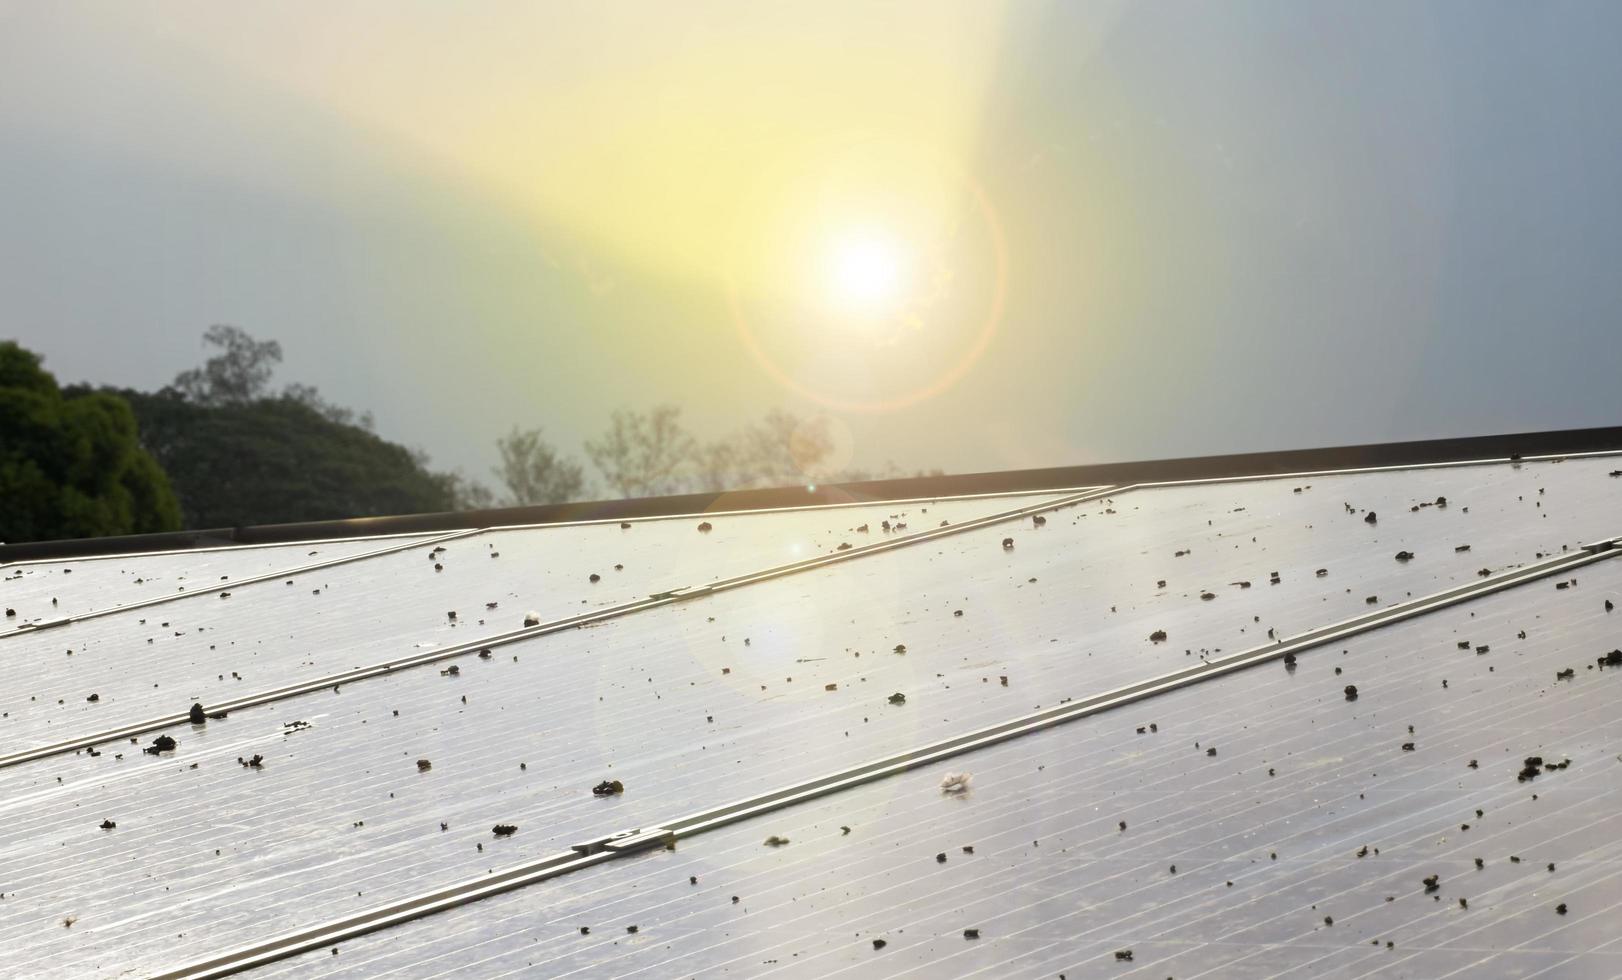 panneau photovoltaïque sur le toit du bâtiment sale de poussière, chute d'oiseau à la surface photo